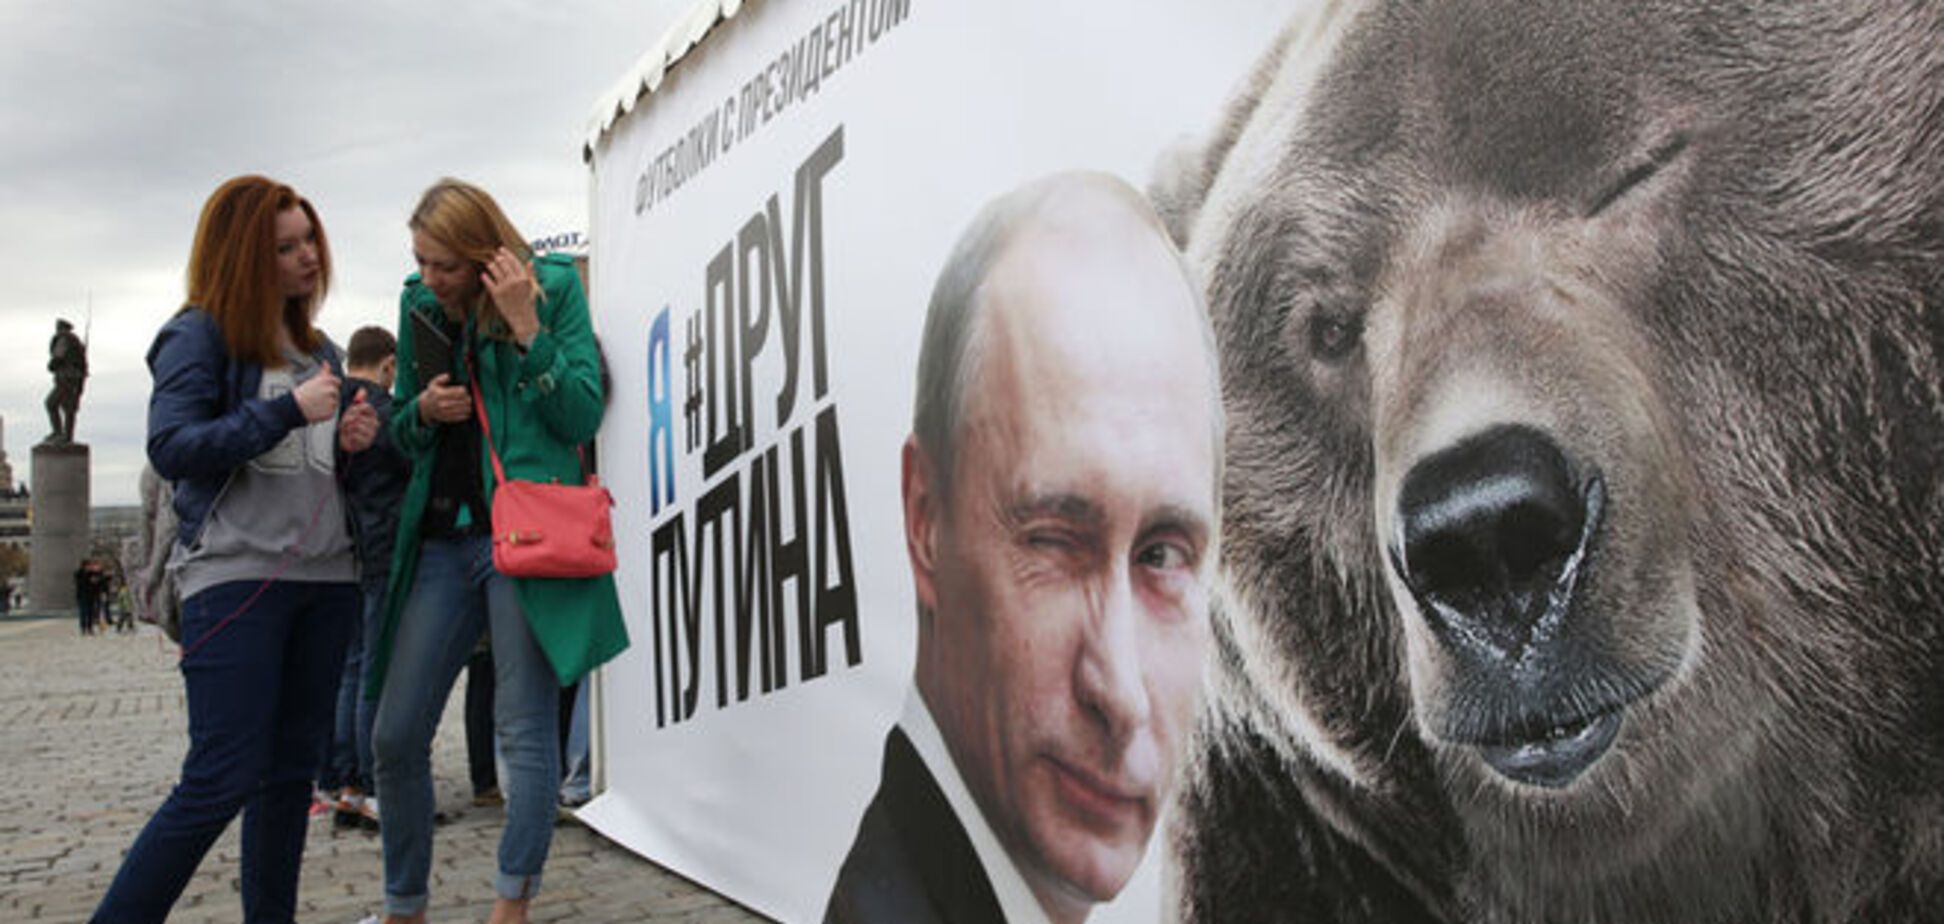 Натяни президента! В России появились майки с заигрывающими Путиным и медведем